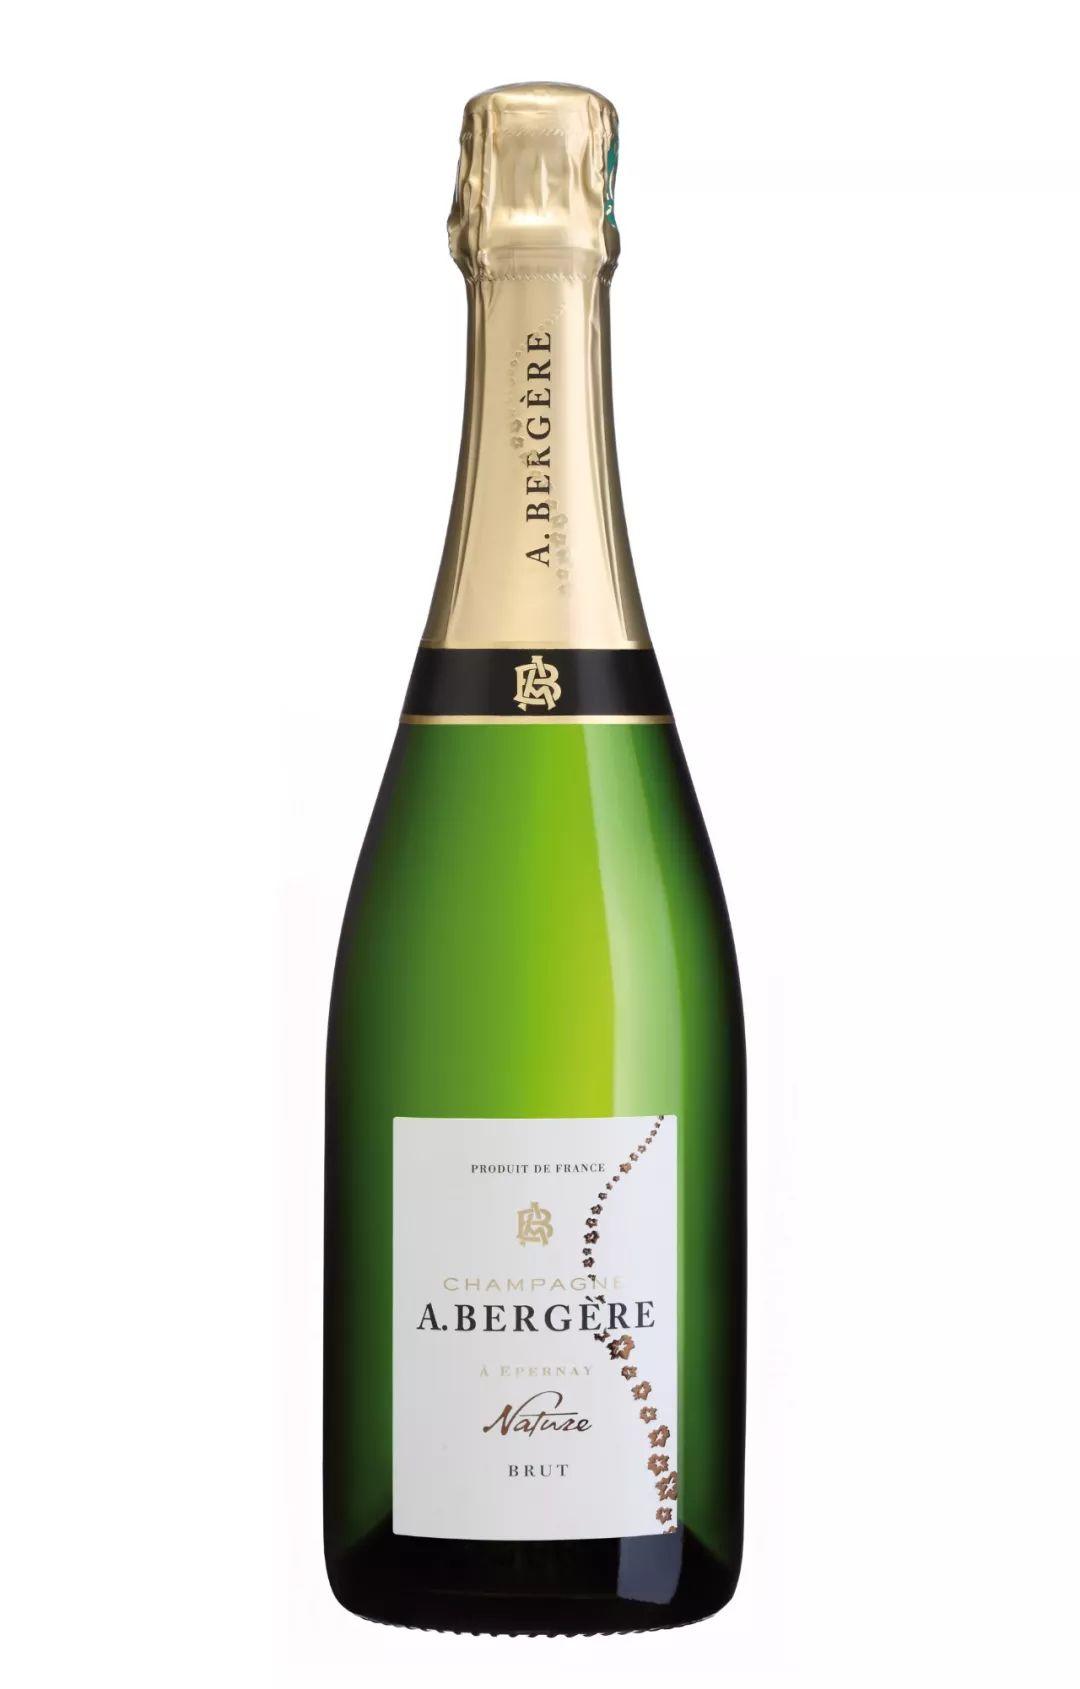 2019 展商介绍 | Champagne A. Bergère